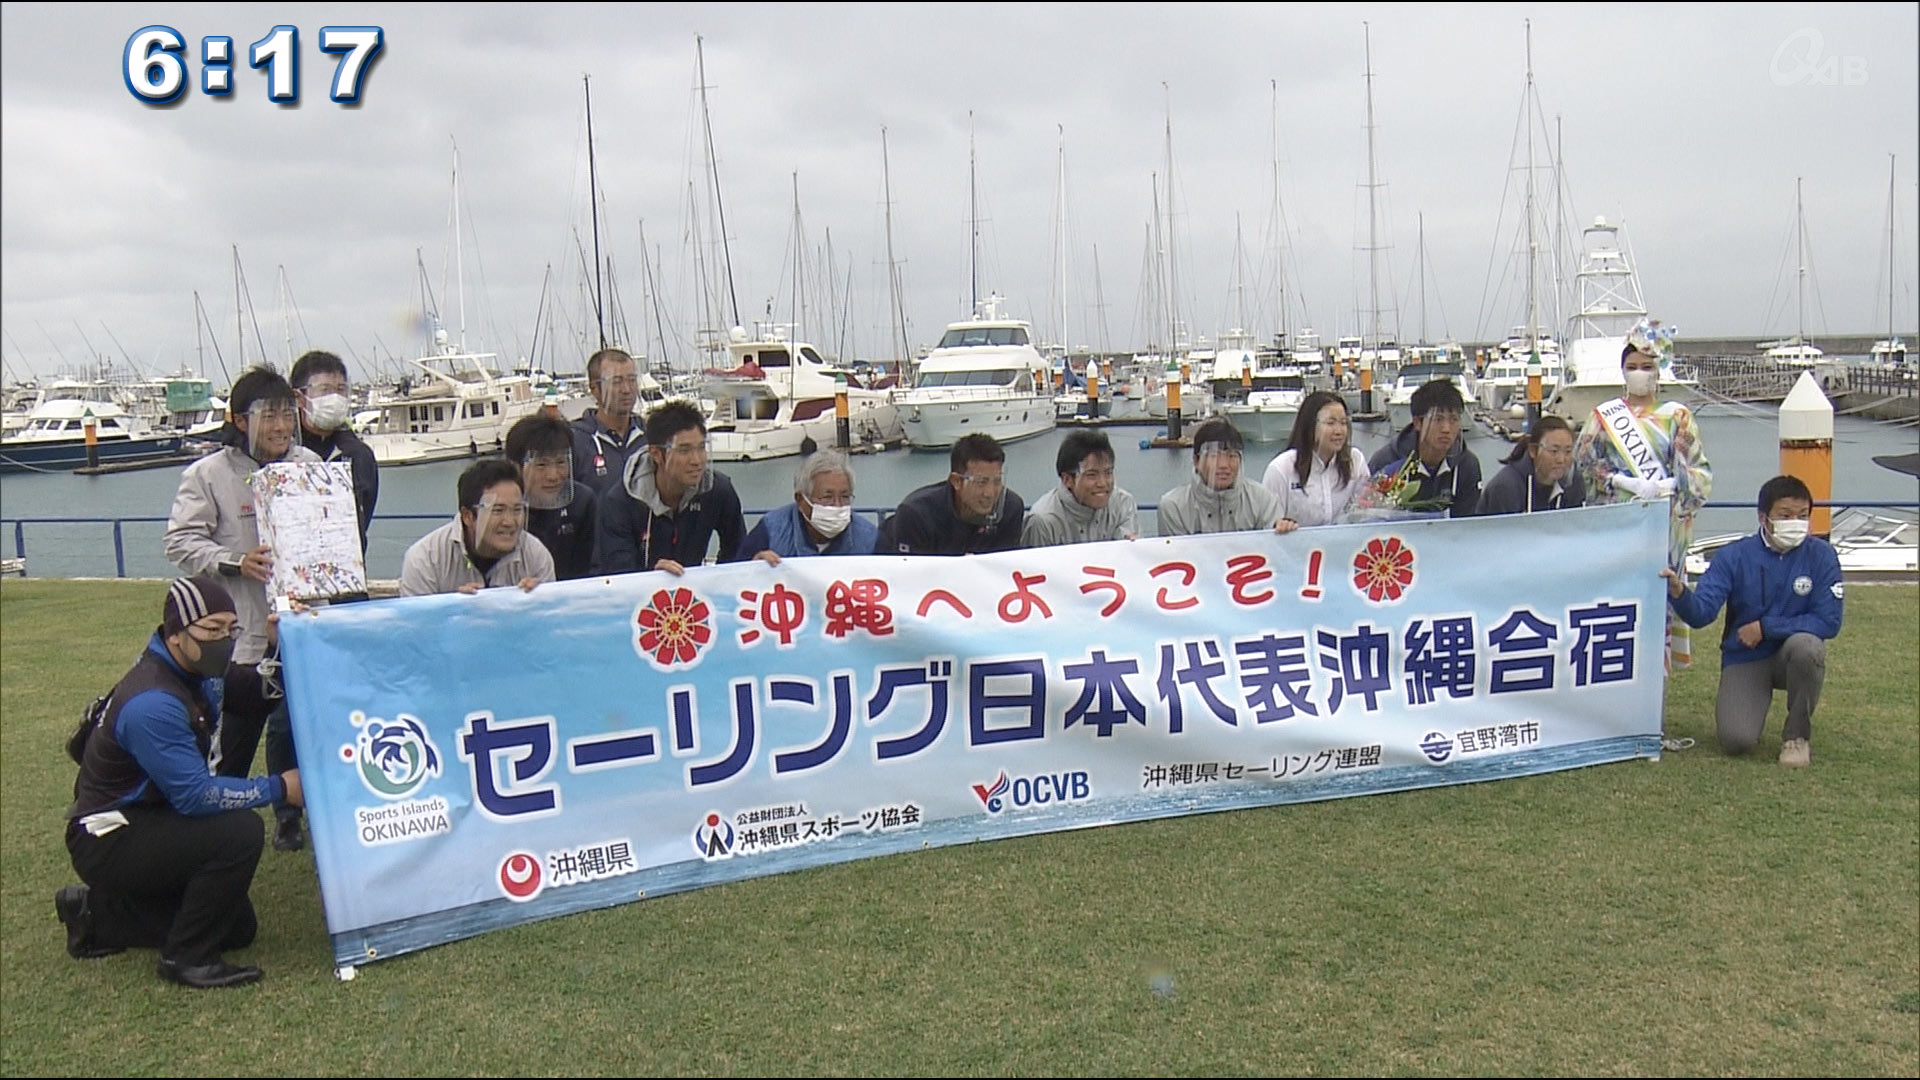 沖縄で合宿をしているセーリング日本代表を歓迎